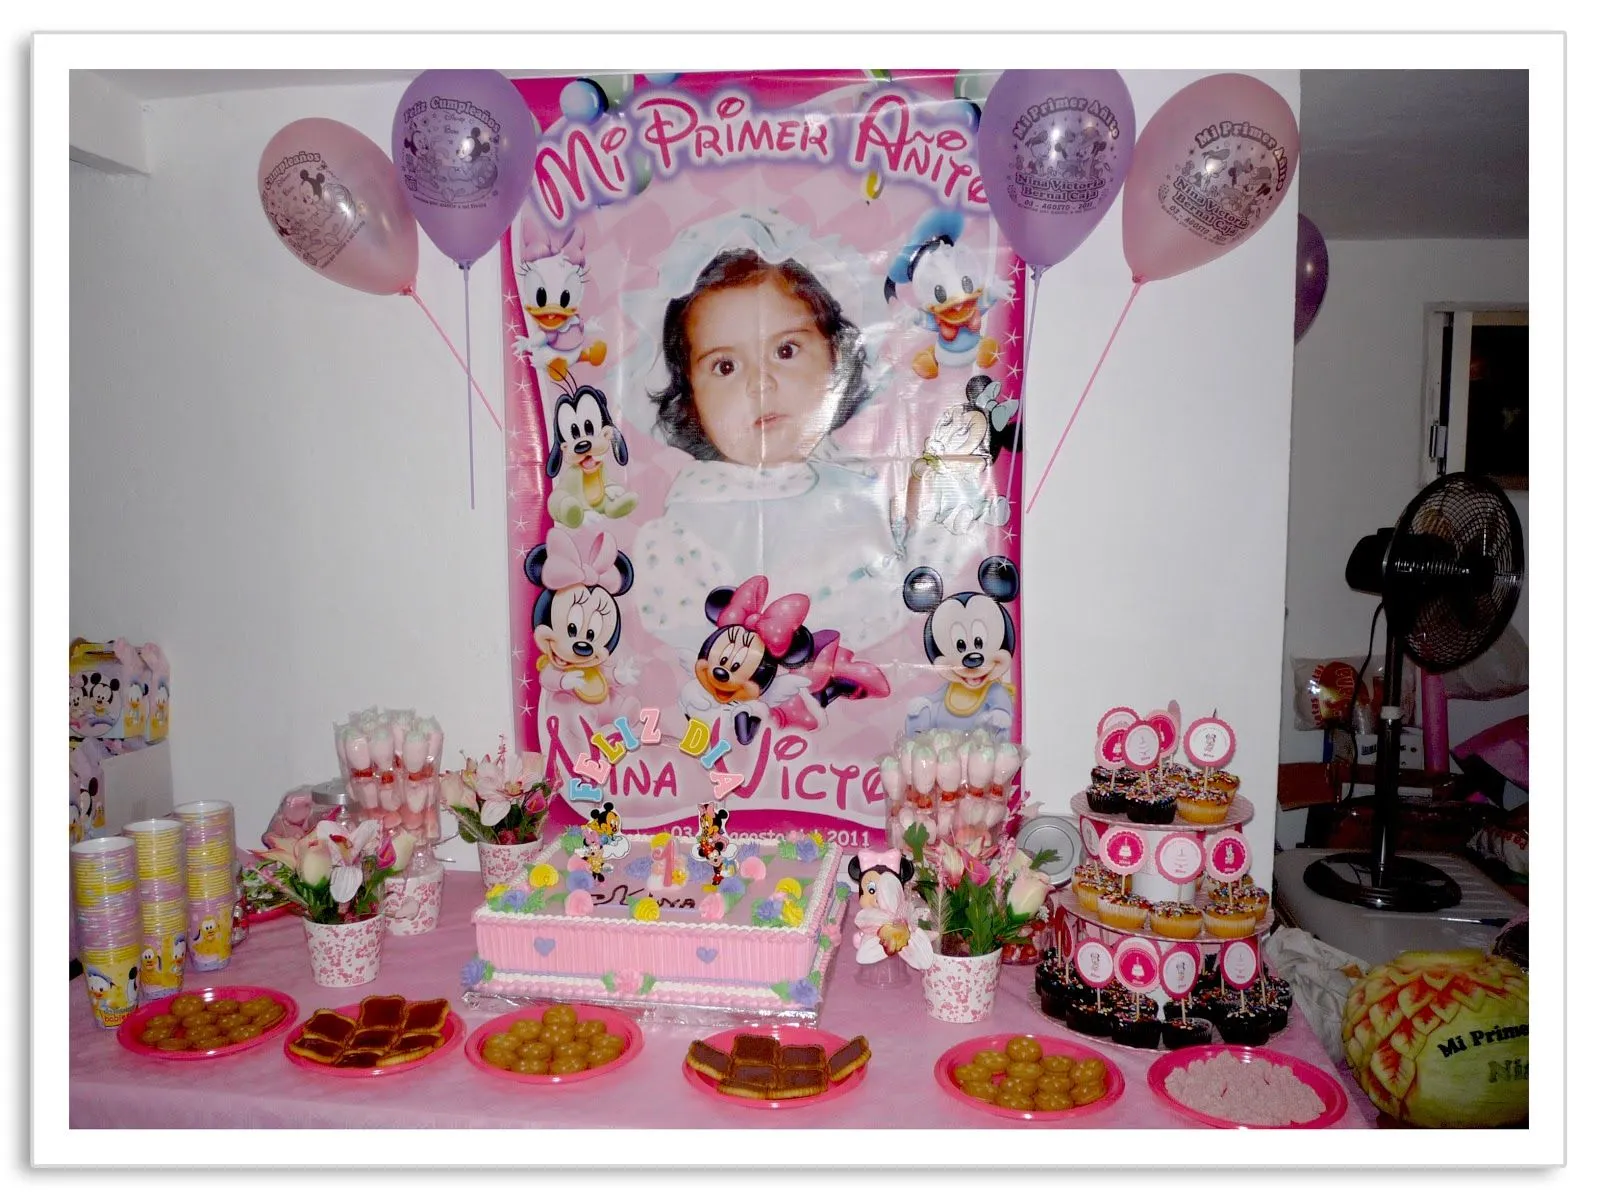 Baby Nina Fiestas: El Primer añito de Nina!!!! fiesta Minnie bebe.